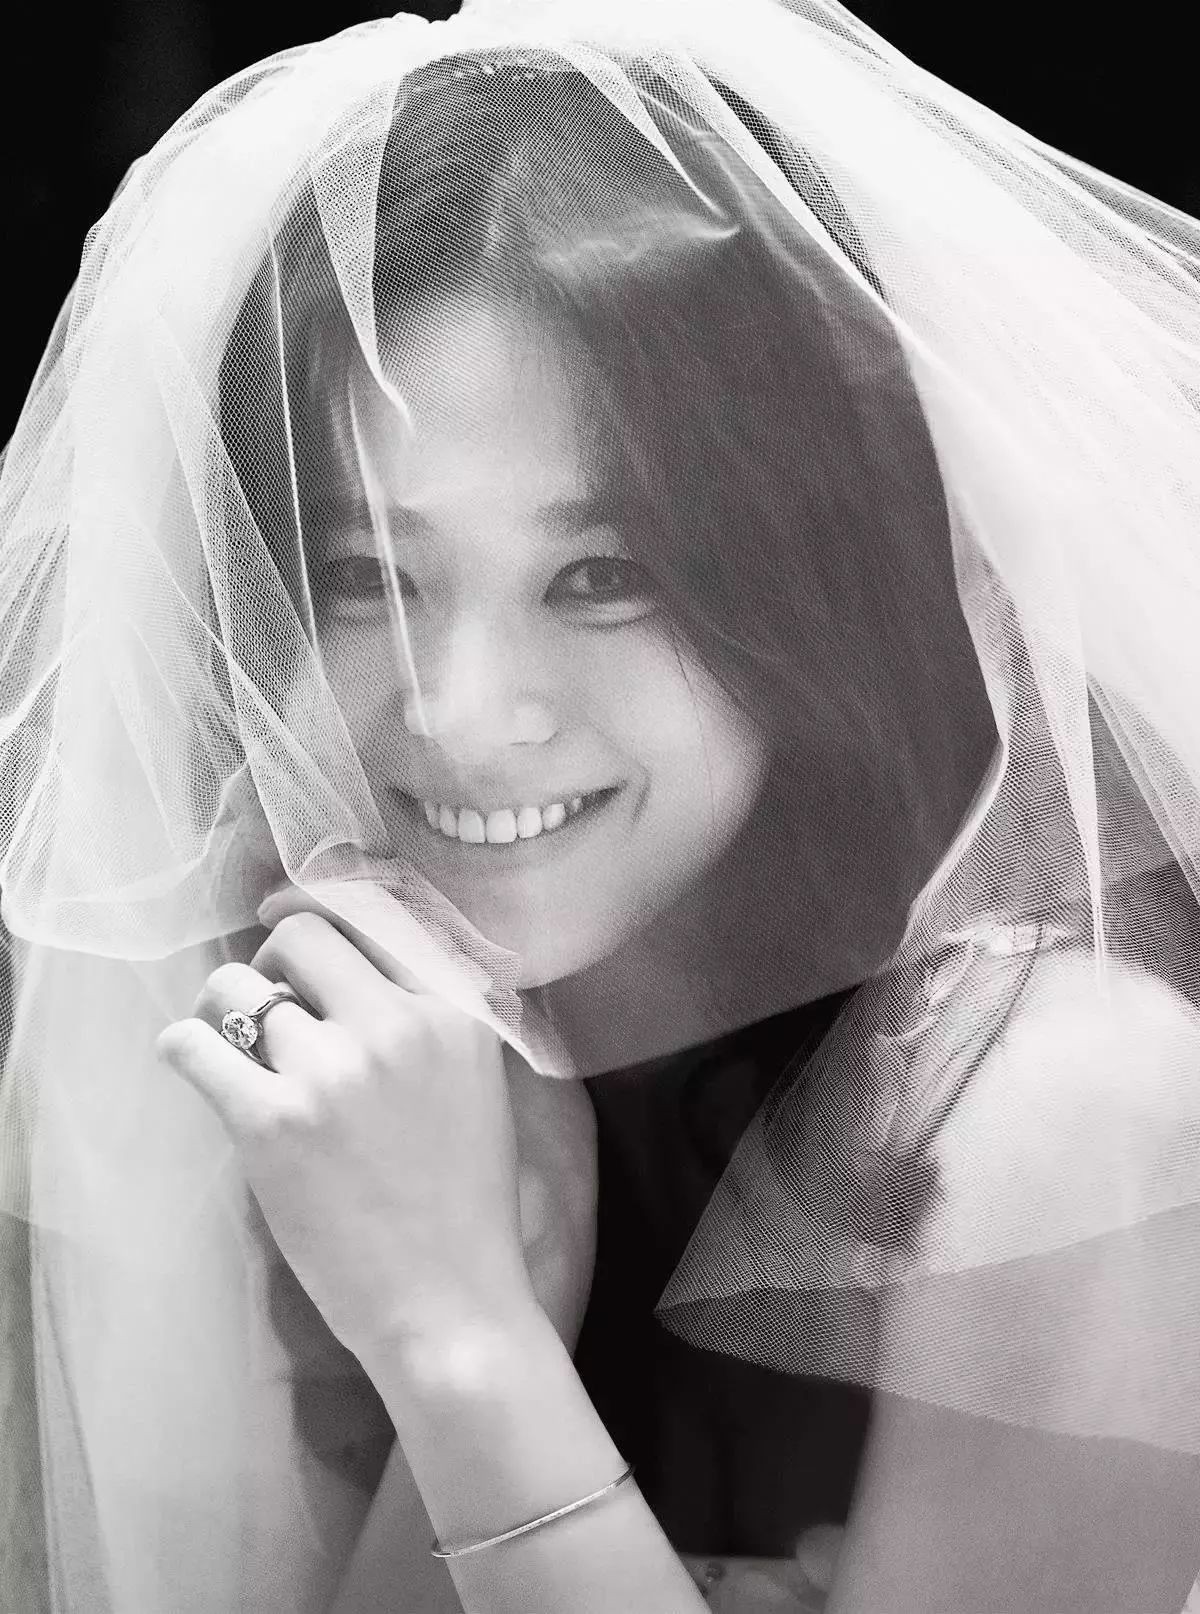 Đau lòng nhất hôm nay: 2 ngày sau khi đệ đơn ly hôn, Song Hye Kyo vẫn giữ bức ảnh cưới 4 triệu like từ 2 năm trước - Ảnh 7.